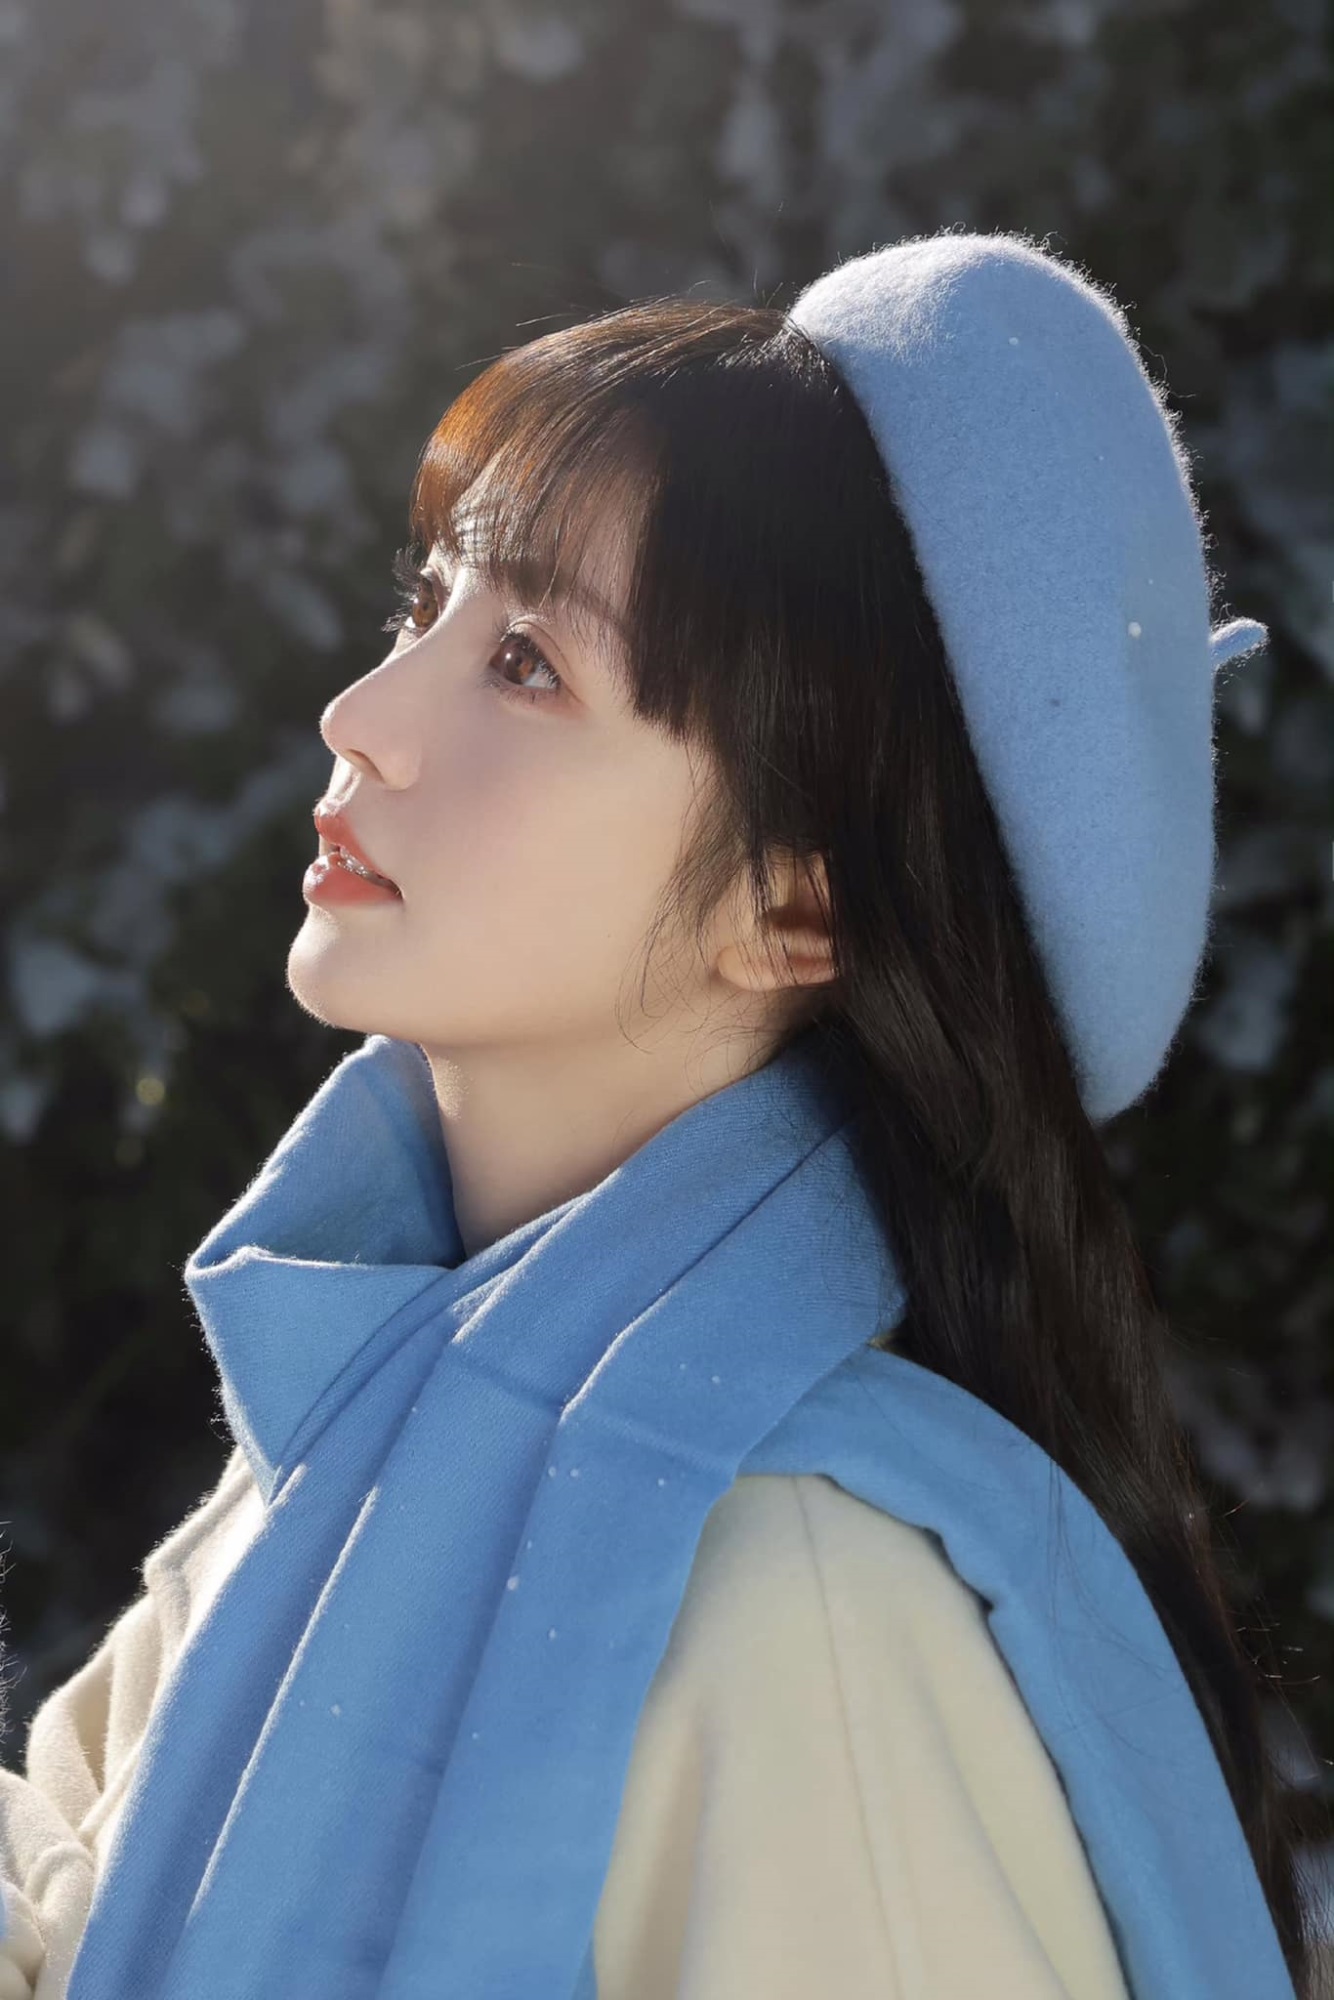 Điền Hi Vi hóa 'cô bé mùa đông' trong bộ ảnh mới, nhan sắc được netizen hết lời khen ngợi  - Ảnh 10